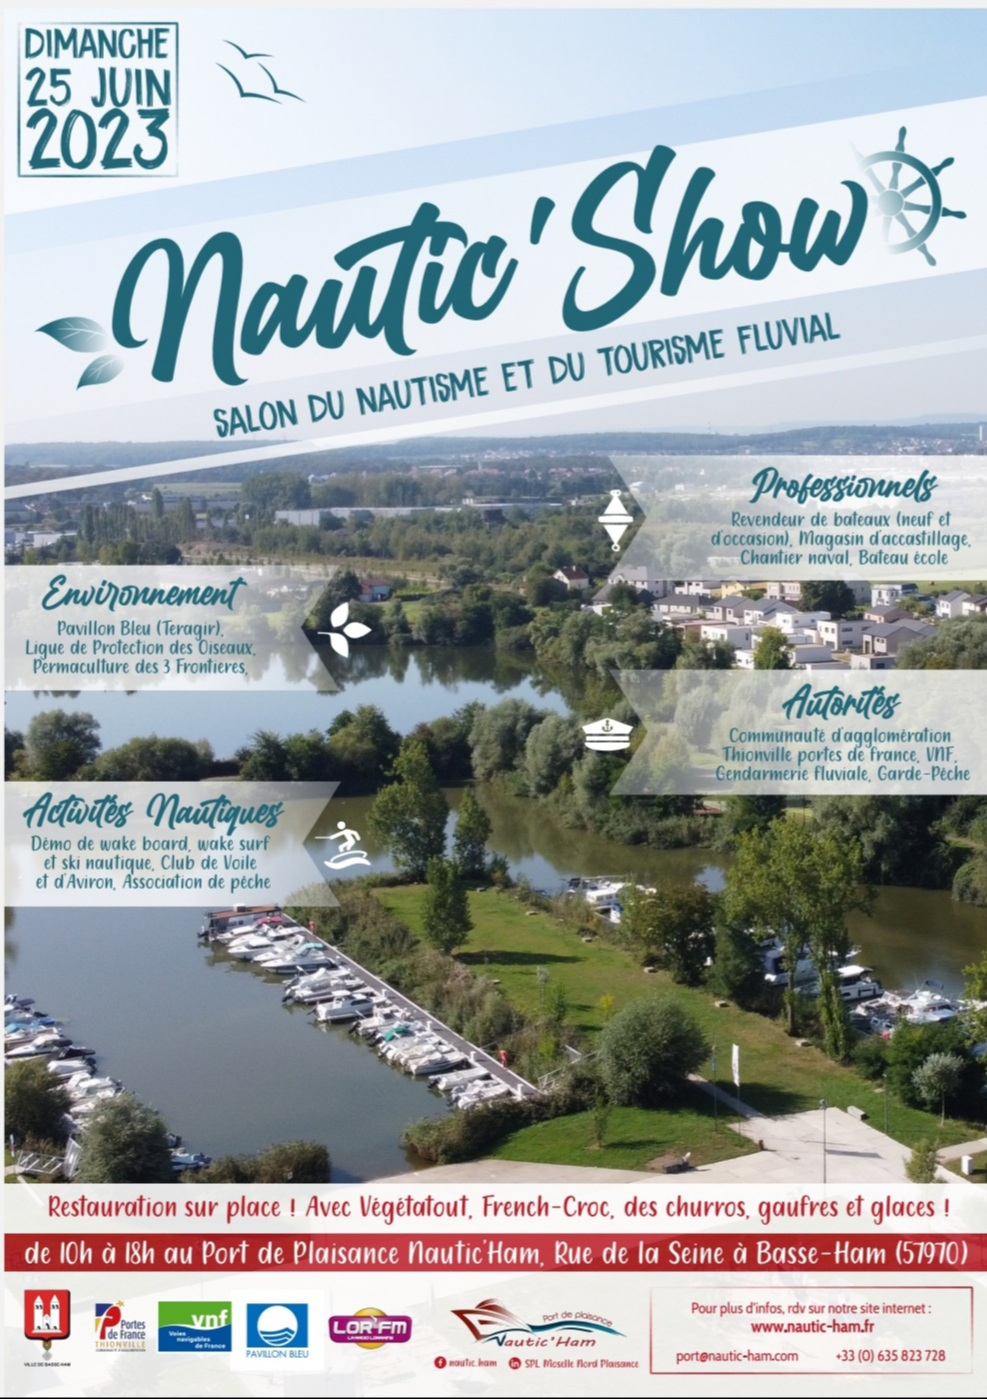 Nautic Show à Basse-Ham le 25 juin 2023  20230611